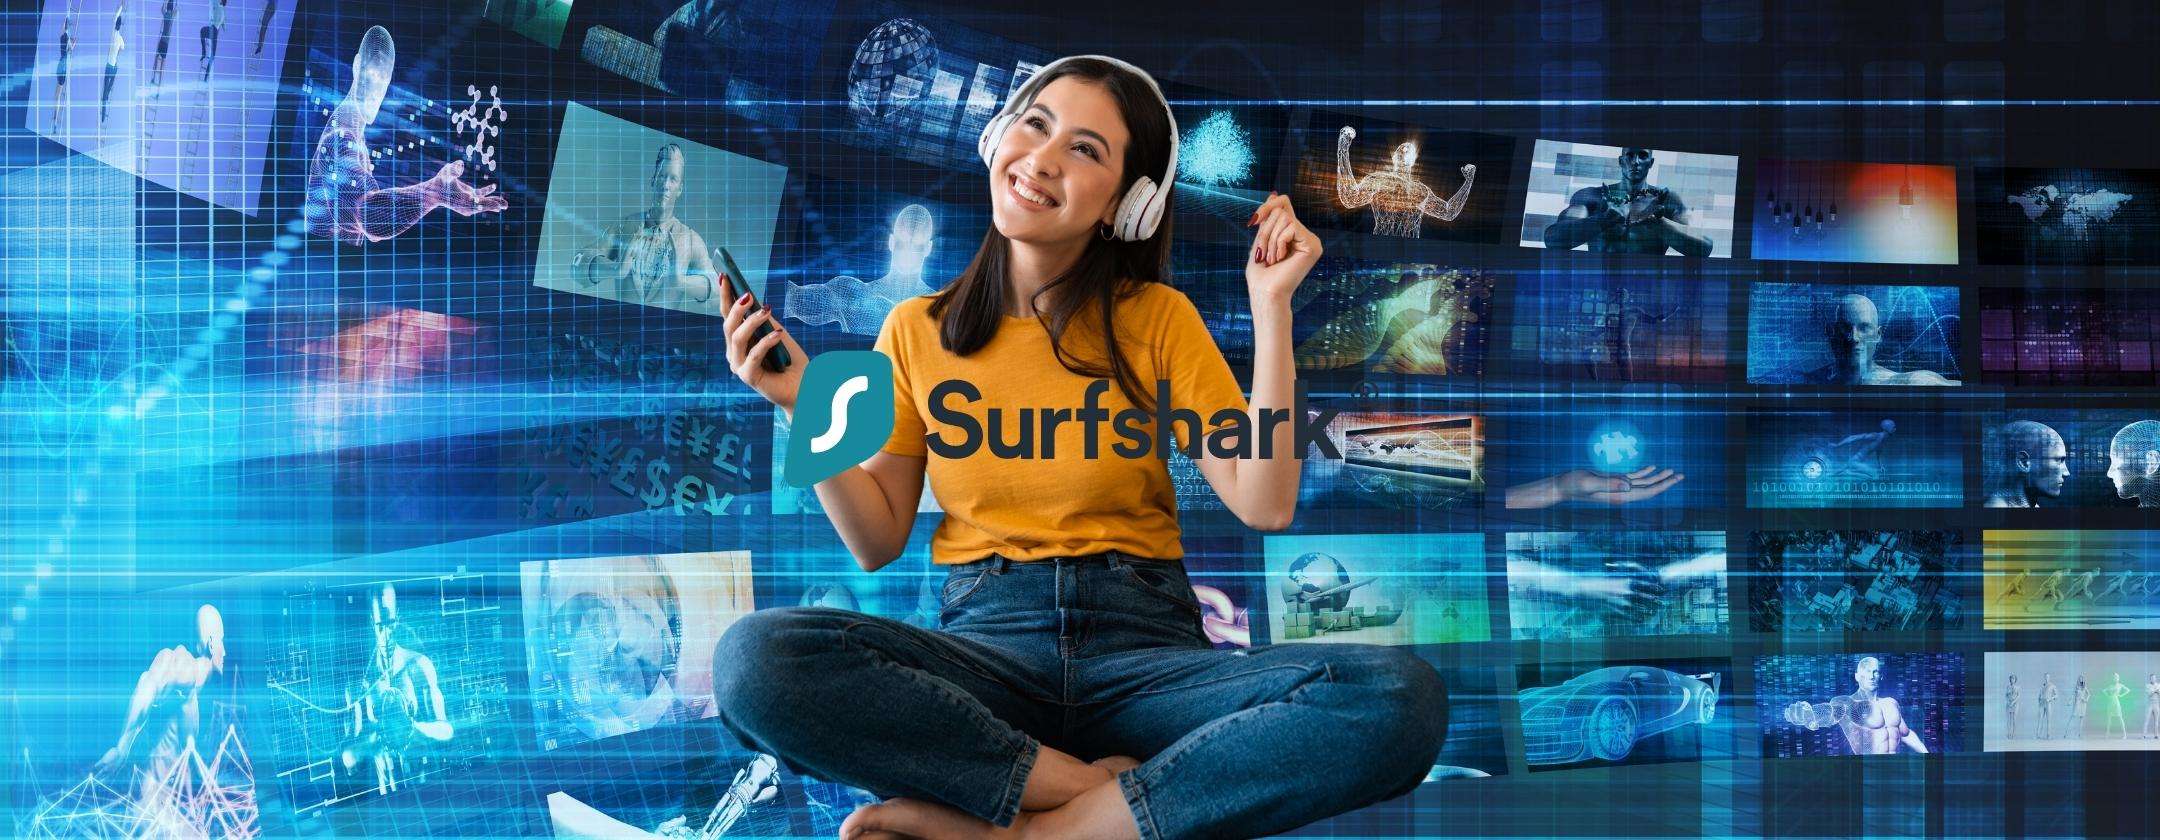 Surfshark VPN e Antivirus in errore di prezzo: corri ad attivarlo a 2,49€